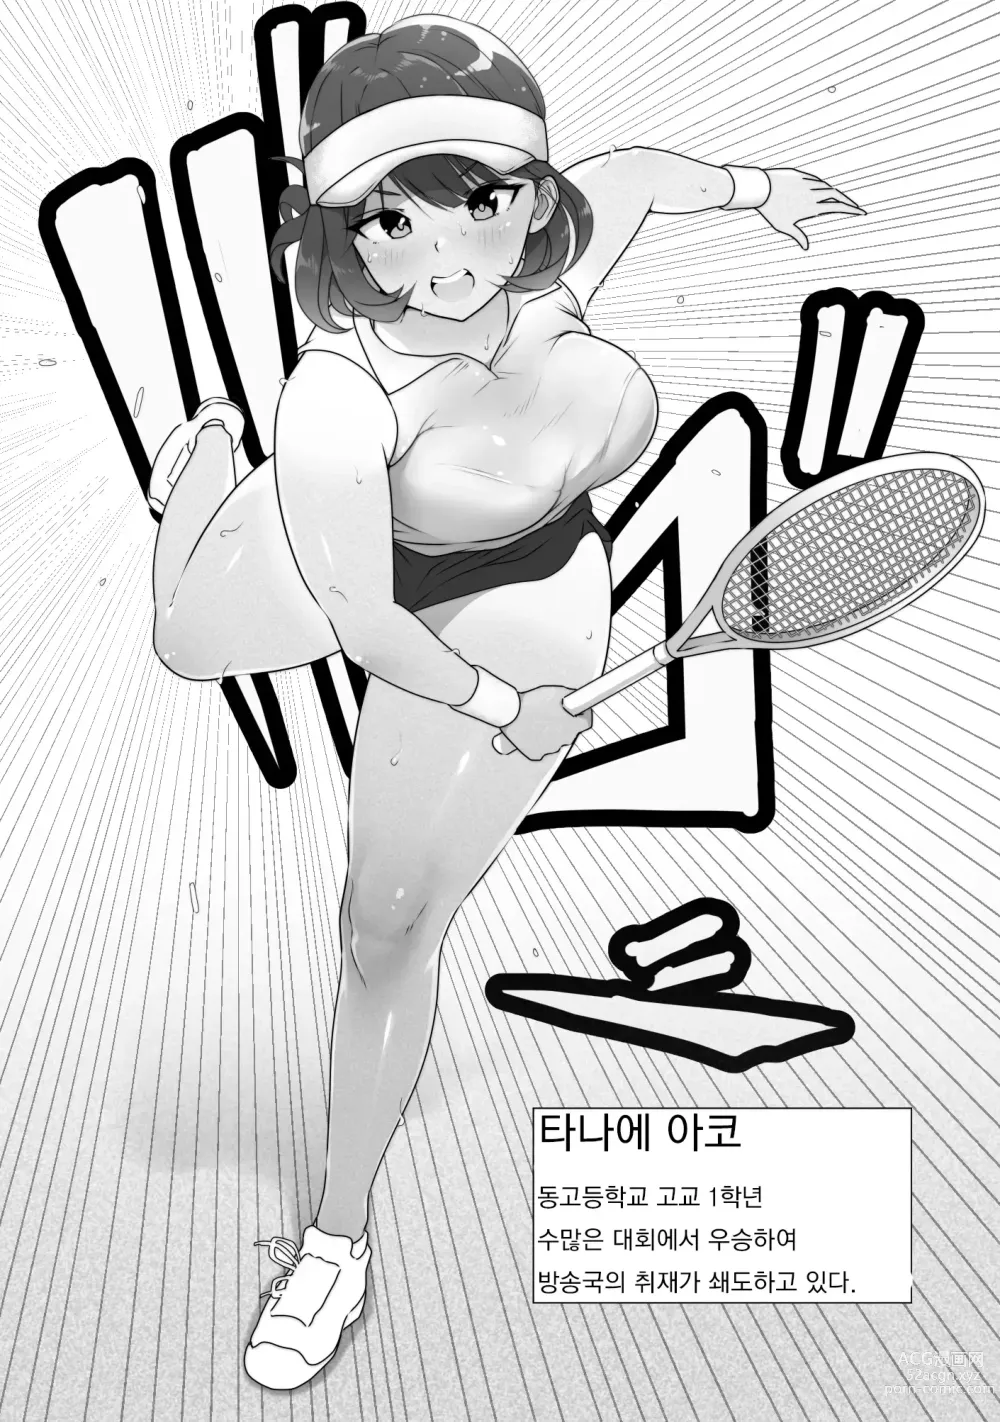 Page 6 of doujinshi 테니스부는 야구부의 손에 떨어졌습니다